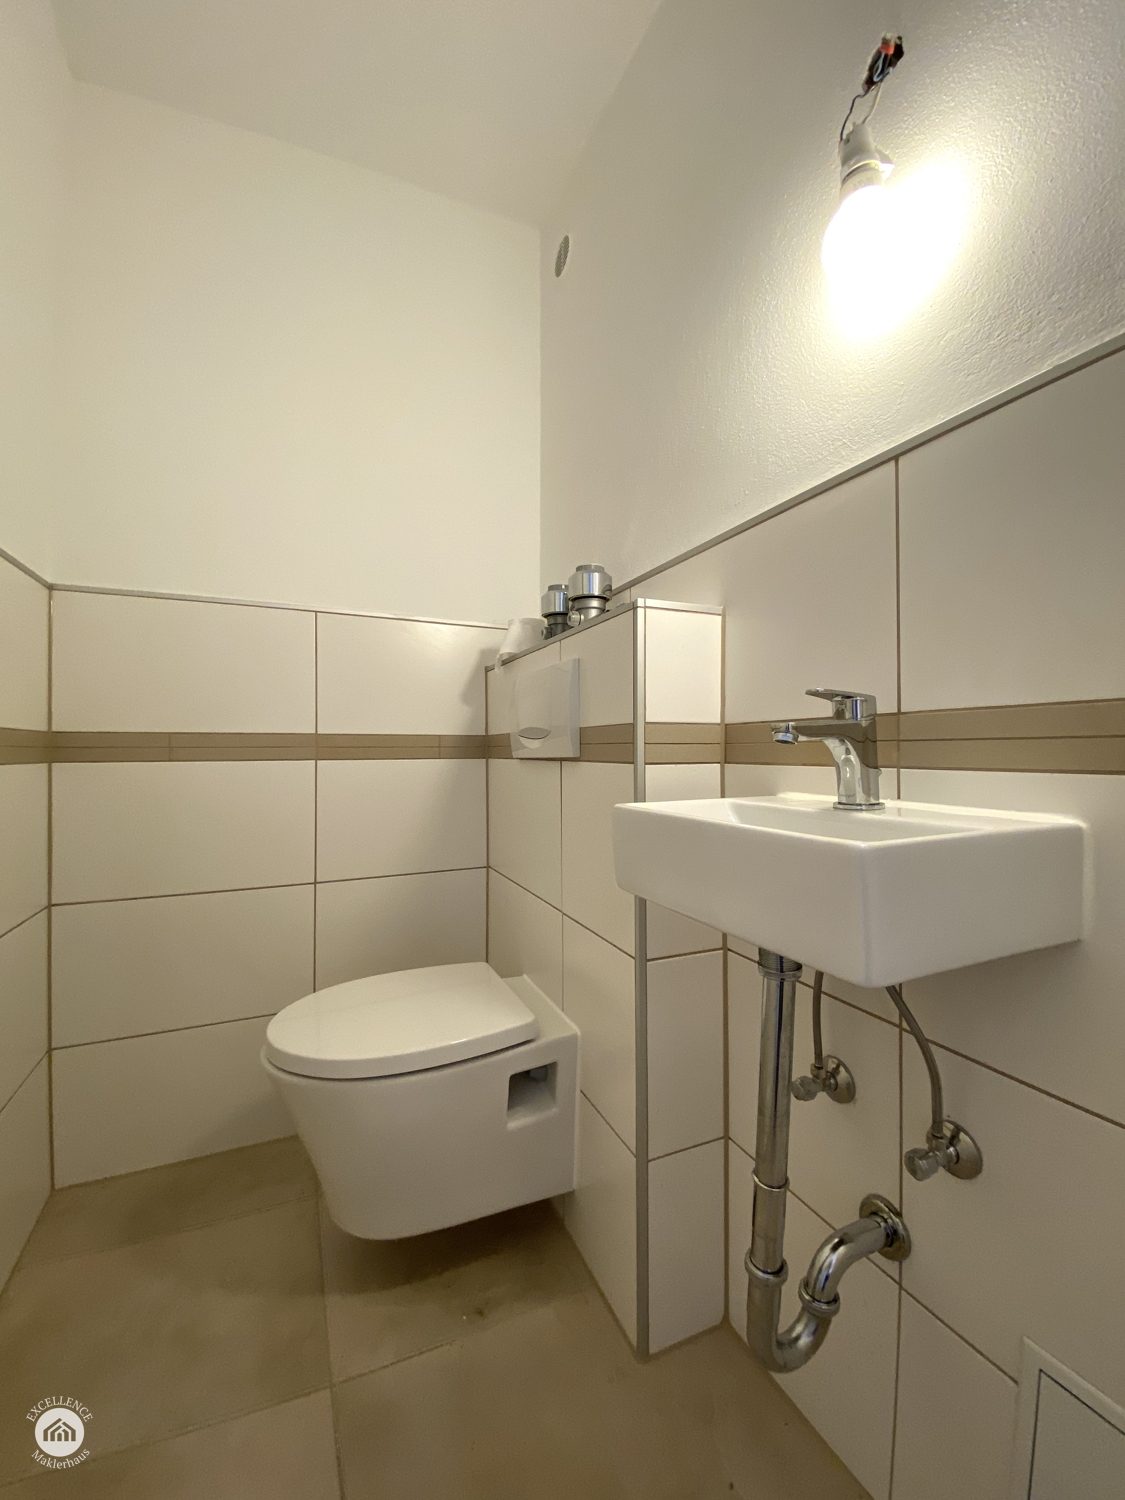 Immobilienangebot - Ulm - Alle - Renovierte Dreizimmerwohnung ohne Käuferprovision - ideal zur Kapitalanlage